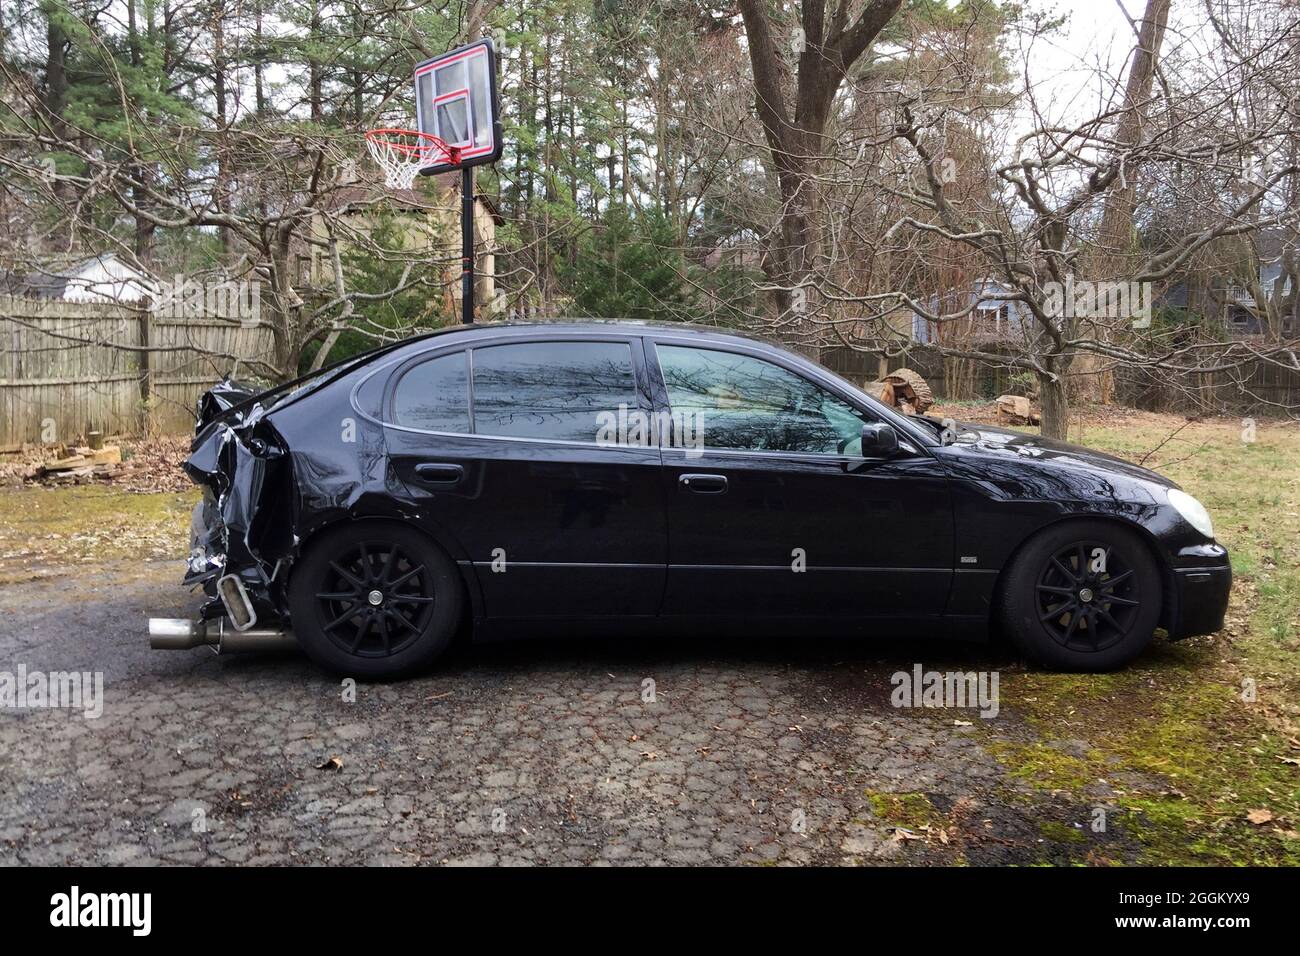 Schwarzes Auto mit Heckschaden durch einen Autounfall (Auffahrunfall) - USA Stockfoto